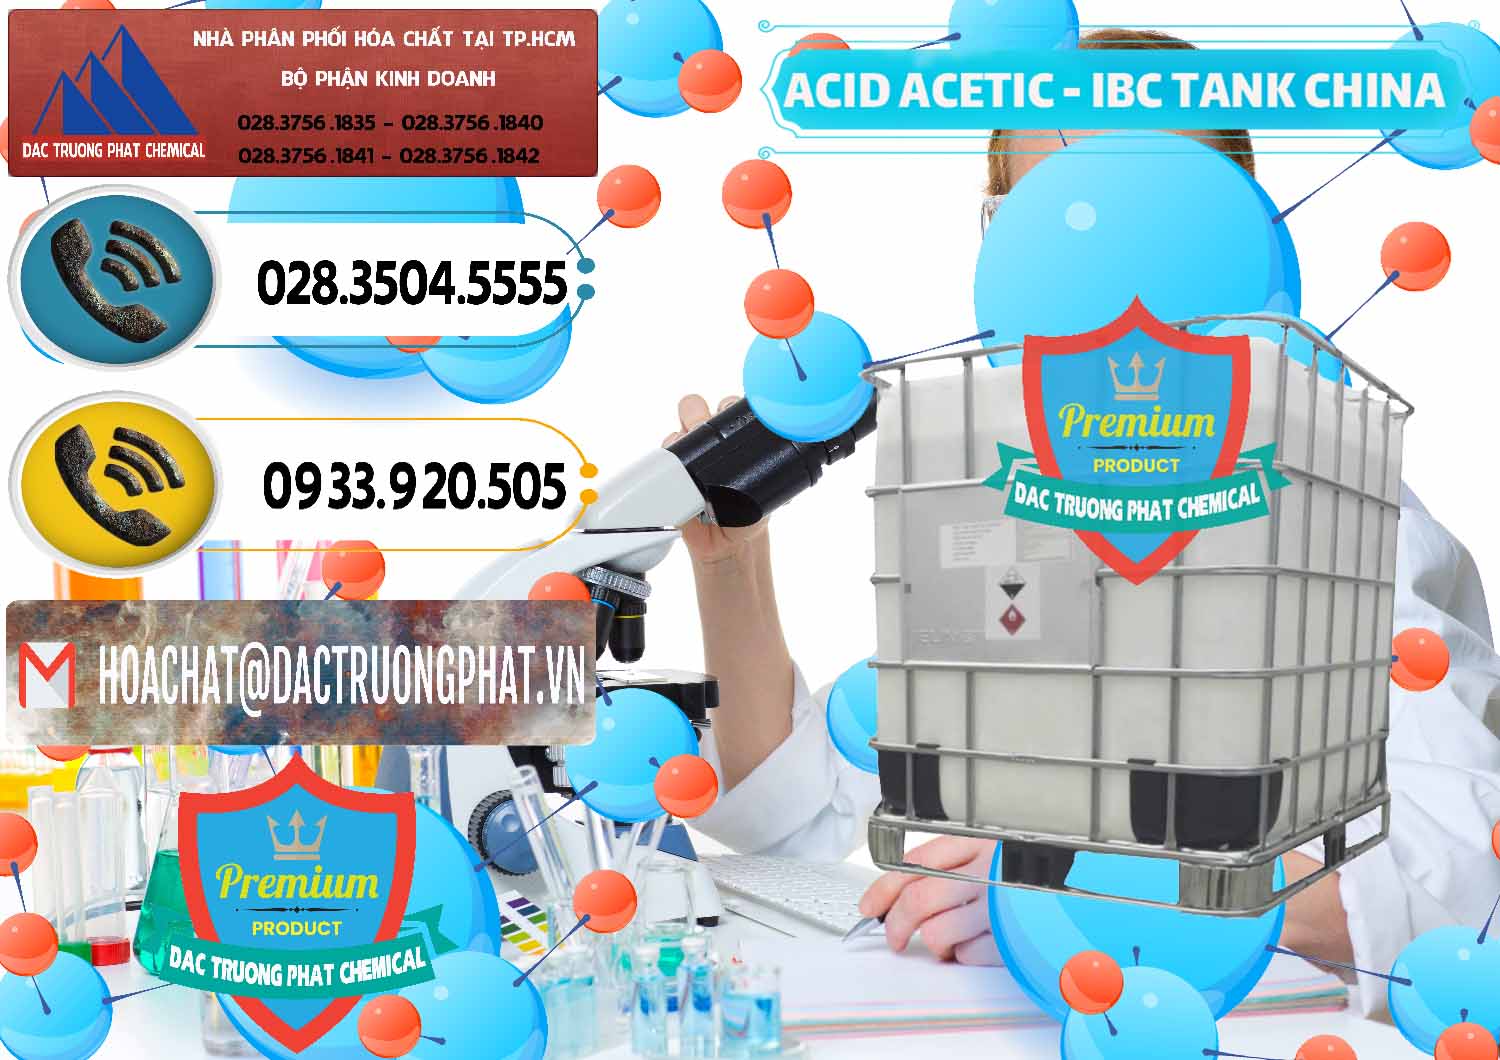 Nơi chuyên phân phối _ bán Acetic Acid – Axit Acetic Tank Bồn IBC Trung Quốc China - 0443 - Đơn vị chuyên cung cấp ( nhập khẩu ) hóa chất tại TP.HCM - hoachatdetnhuom.vn